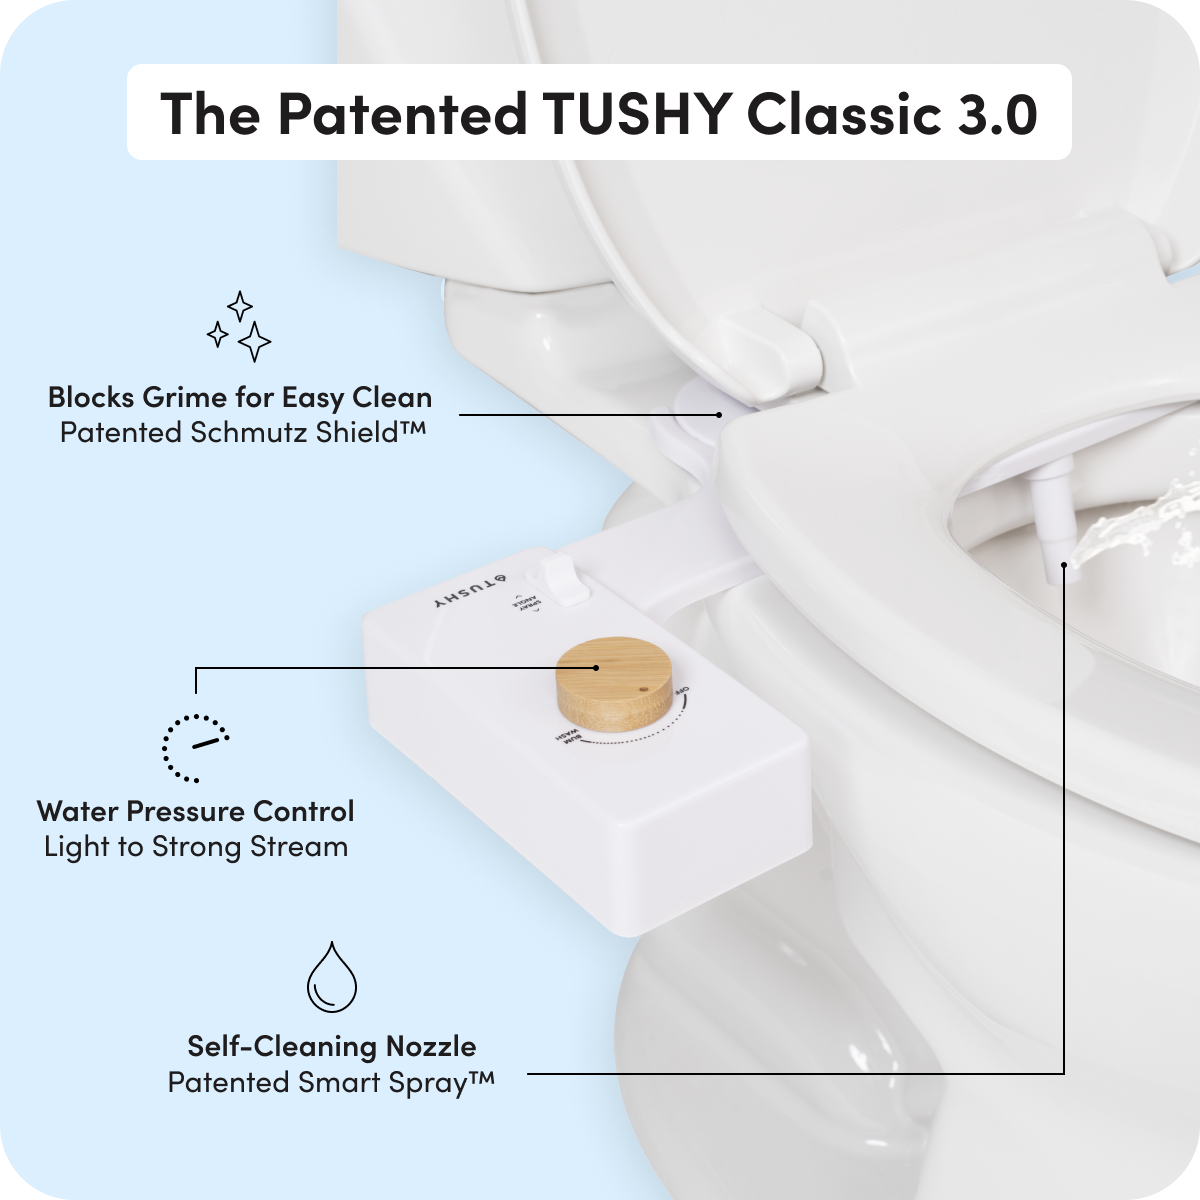 TUSHY Classic 3.0